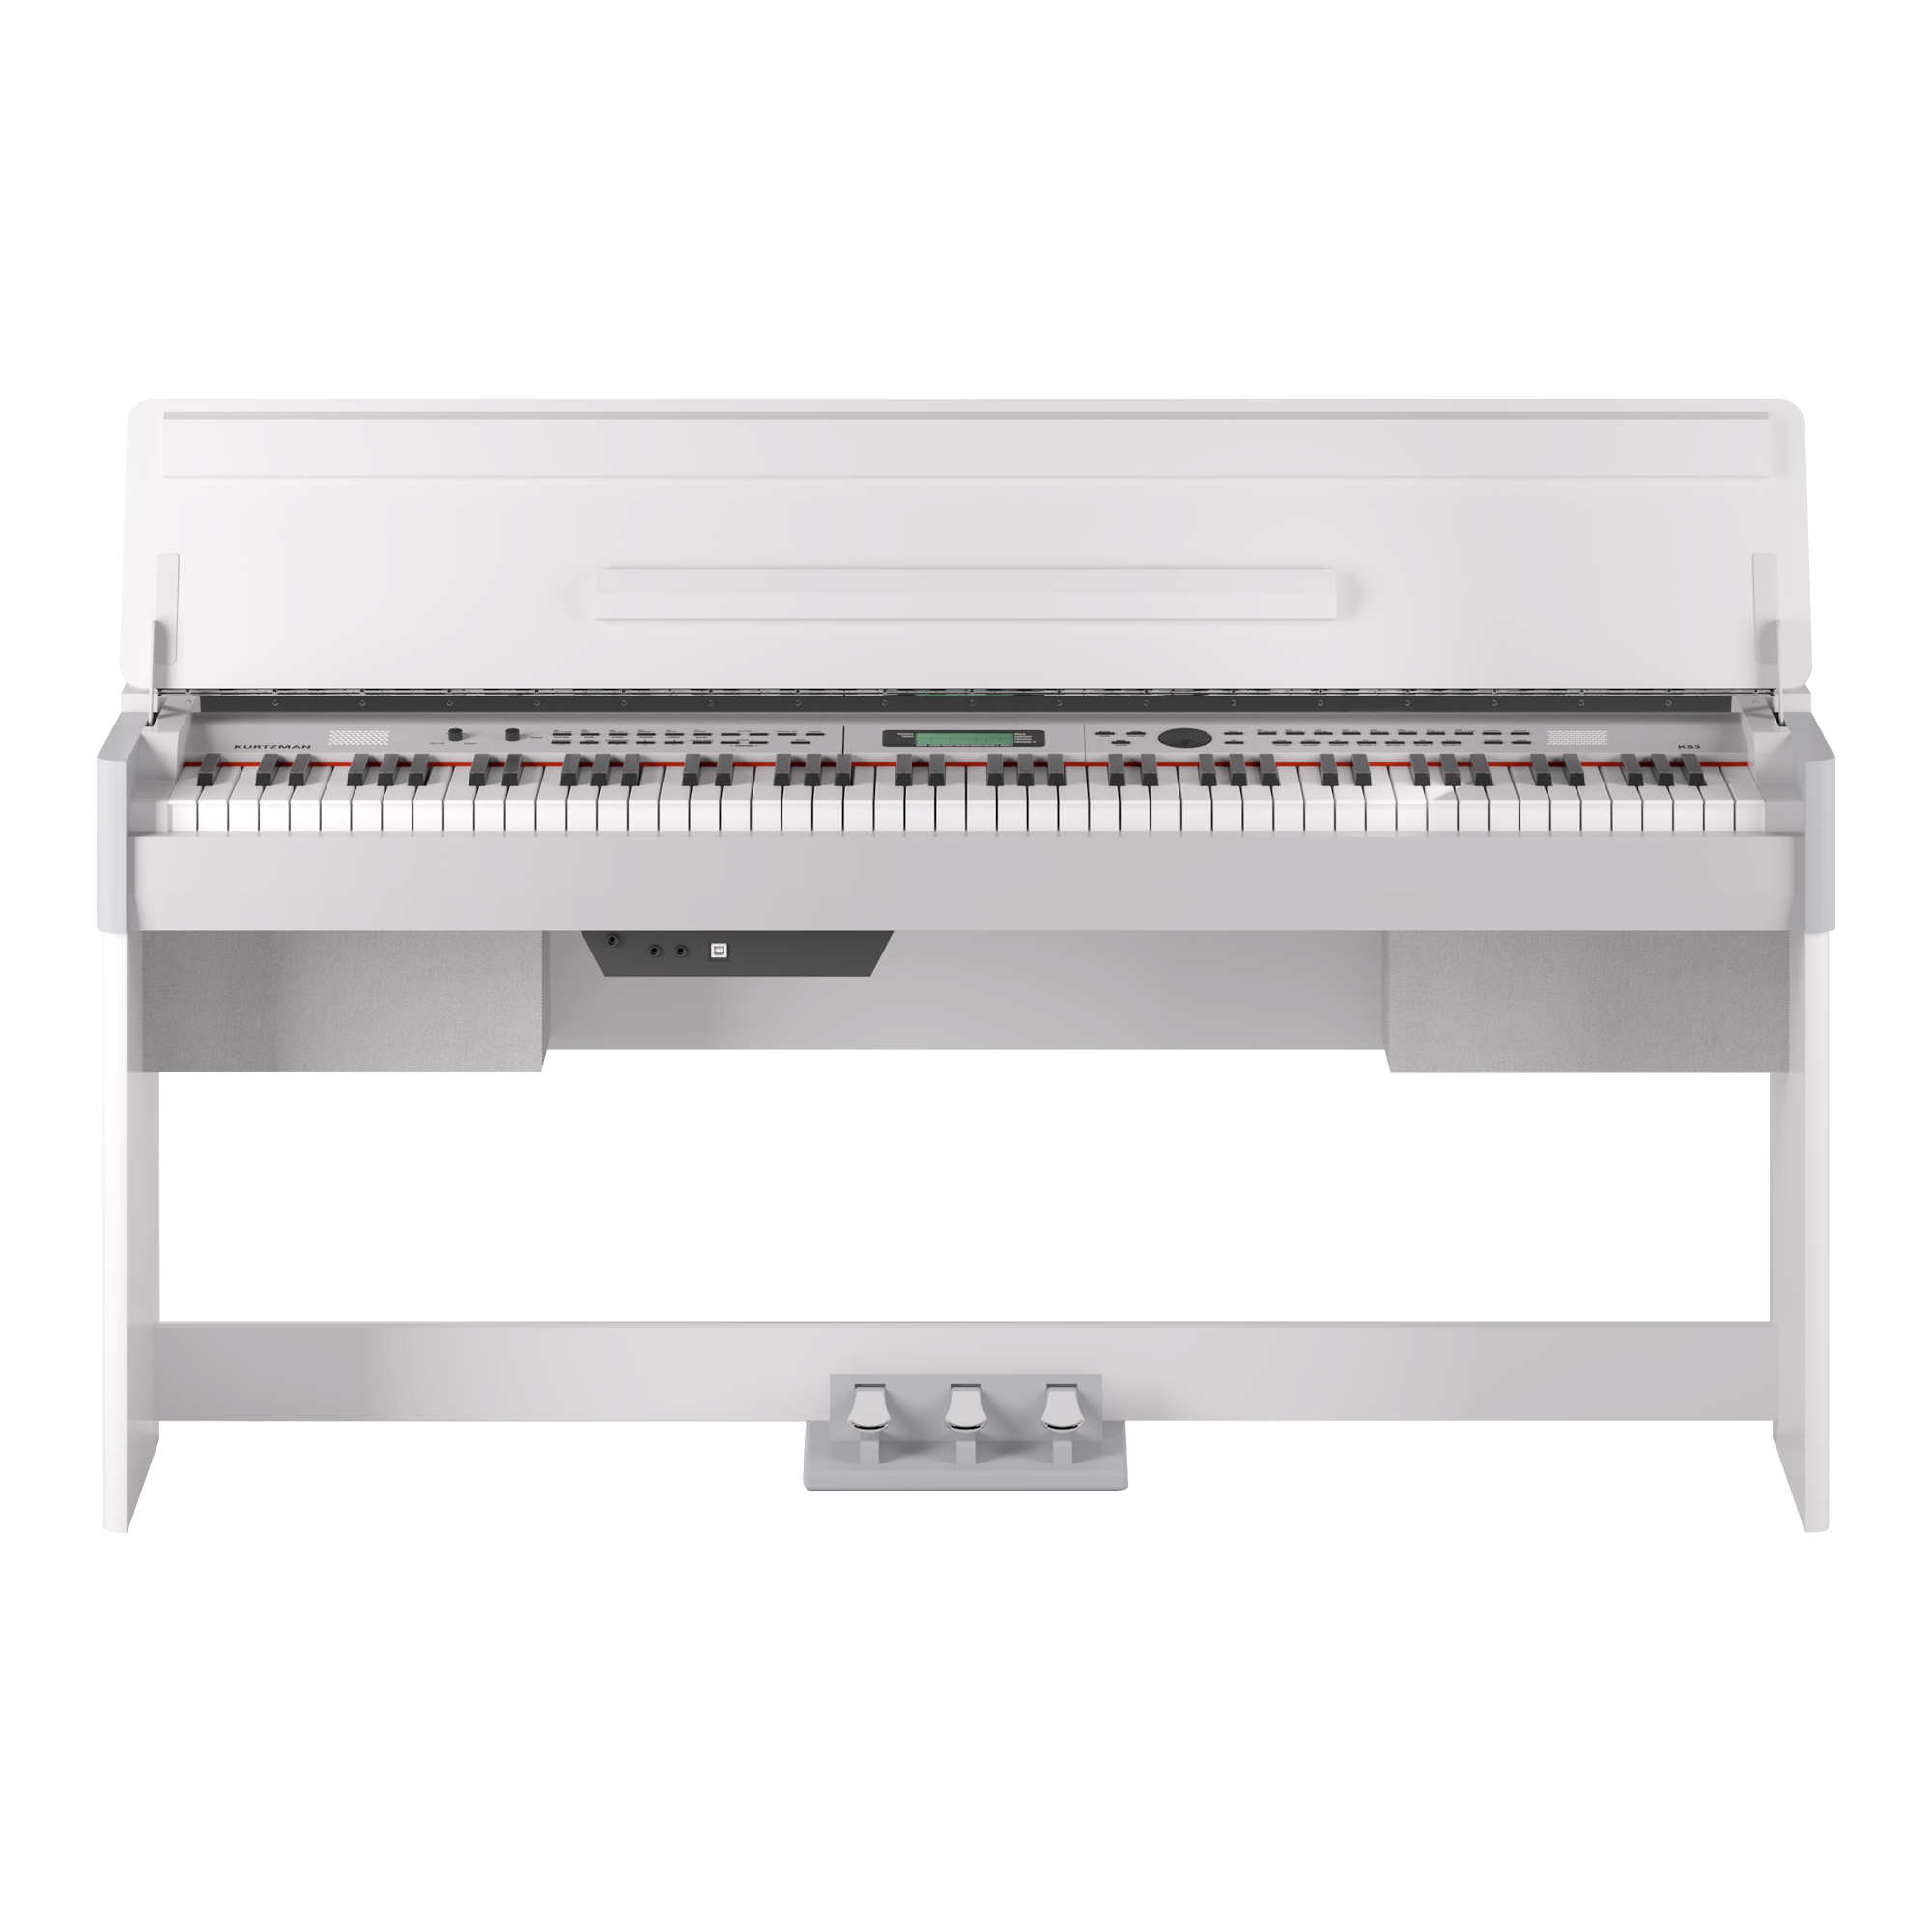 Đàn Piano điện, Digital Piano - Kzm Kurtzman KS3 - White, hệ 88 phím GAC (graded action compact) - Hàng chính hãng